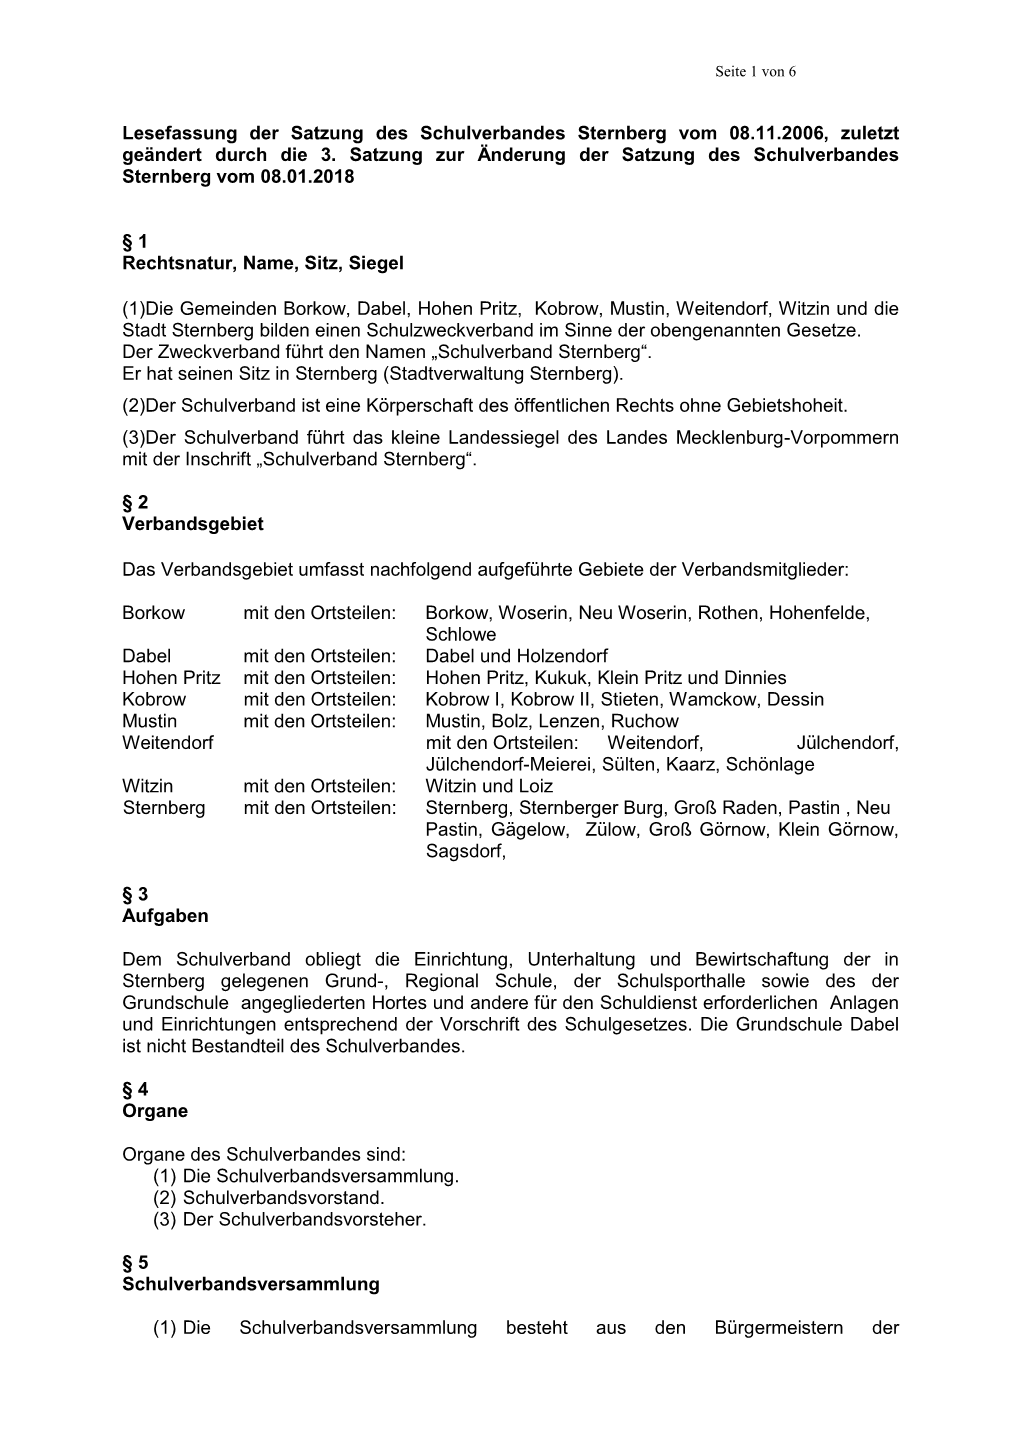 Lesefassung Der Satzung Des Schulverbandes Sternberg Vom 08.11.2006, Zuletzt Geändert Durch Die 3